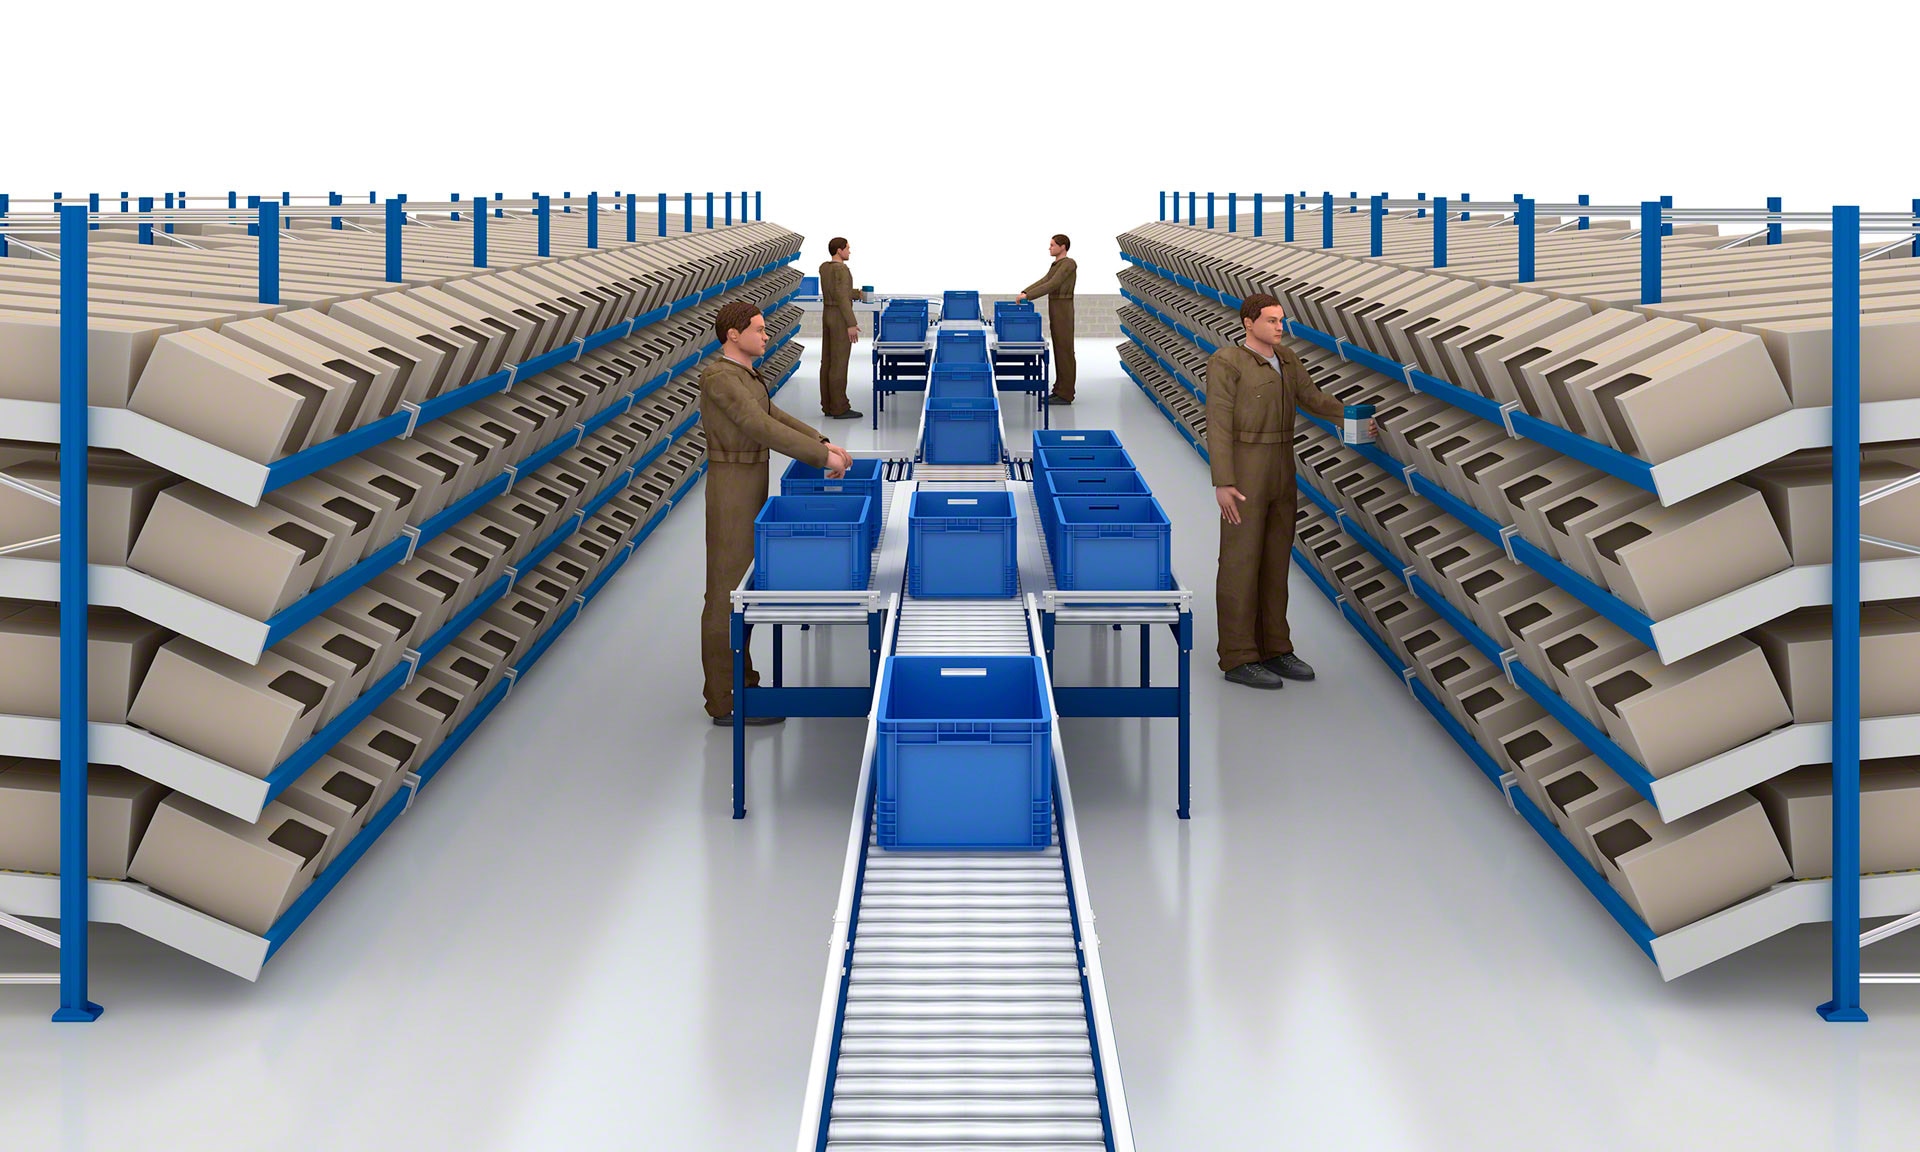 Las estanterías para picking dinámico suelen combinarse con soluciones de transporte automático para acelerar el flujo de mercancías por el almacén